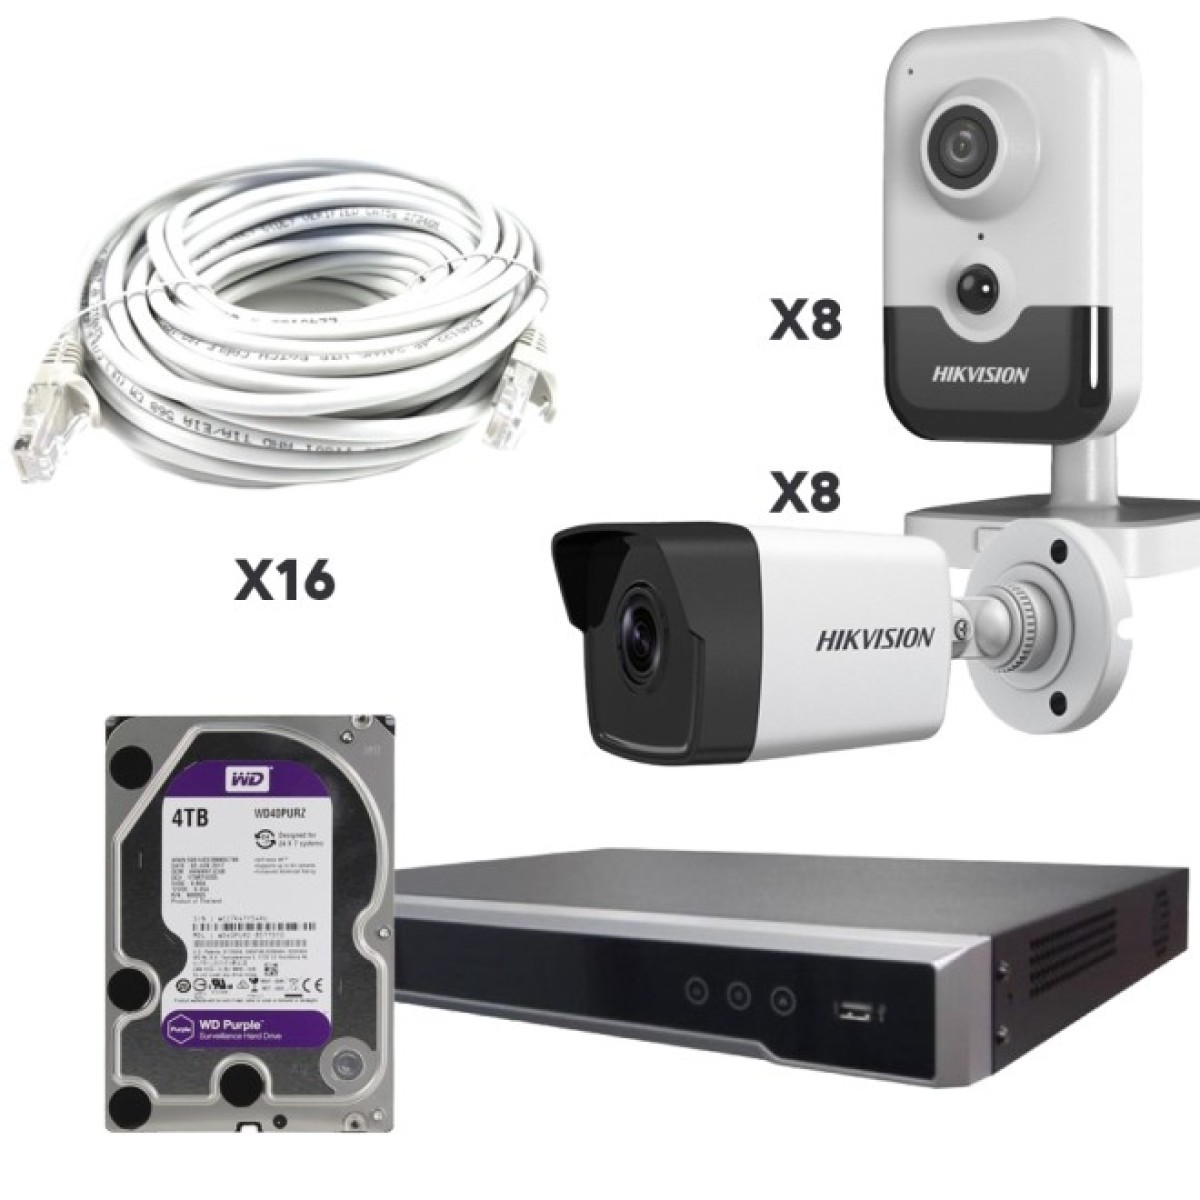 Комплект видеонаблюдения на 16 камер для офиса с возможностью записи звука на 8 камерах 256_256.jpg